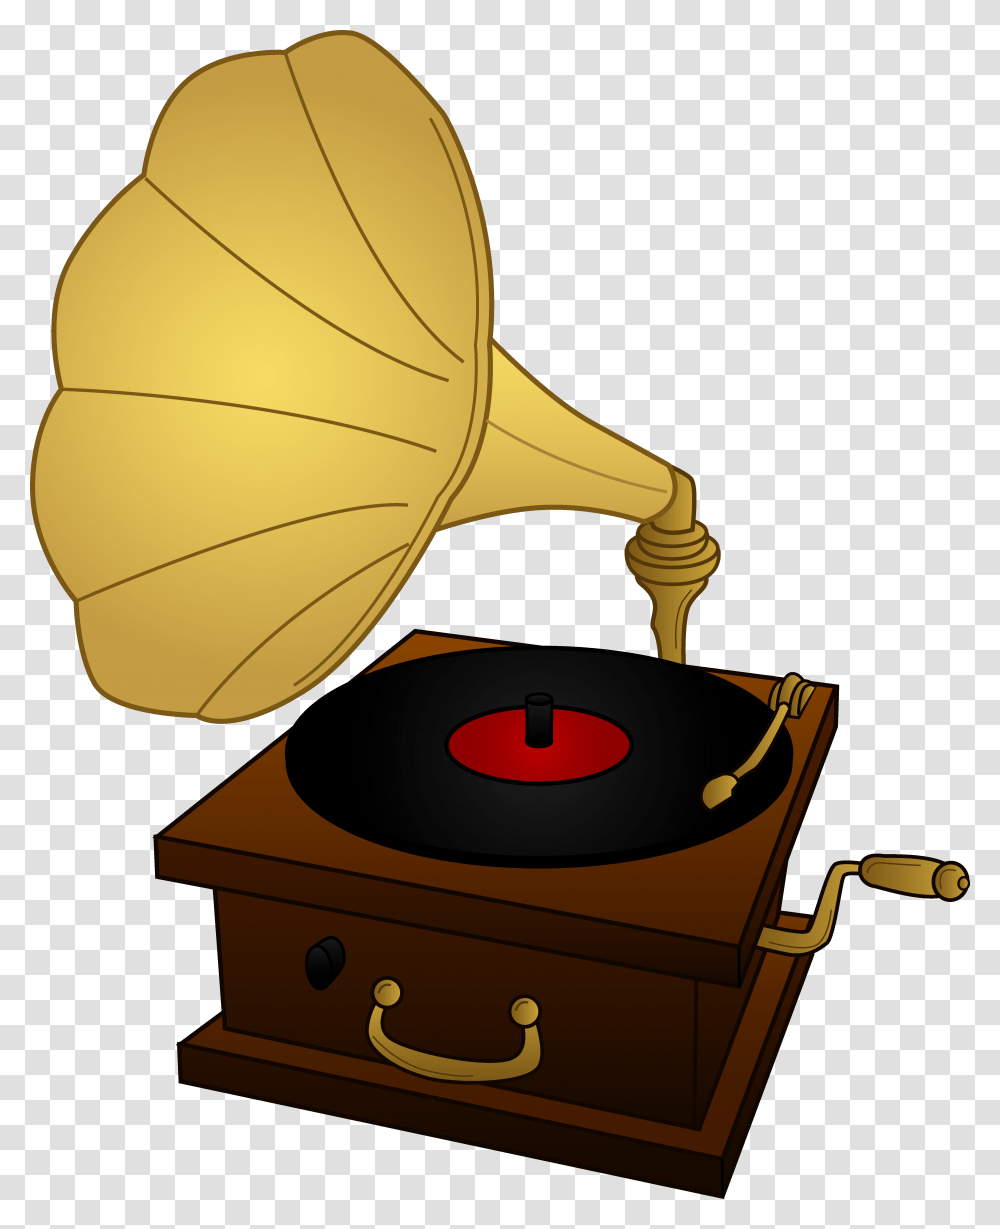 Vinyl Record Clip Art Vinyl Record Vinyl Records, Musical Instrument, Brass Section, Horn, Baseball Cap Transparent Png